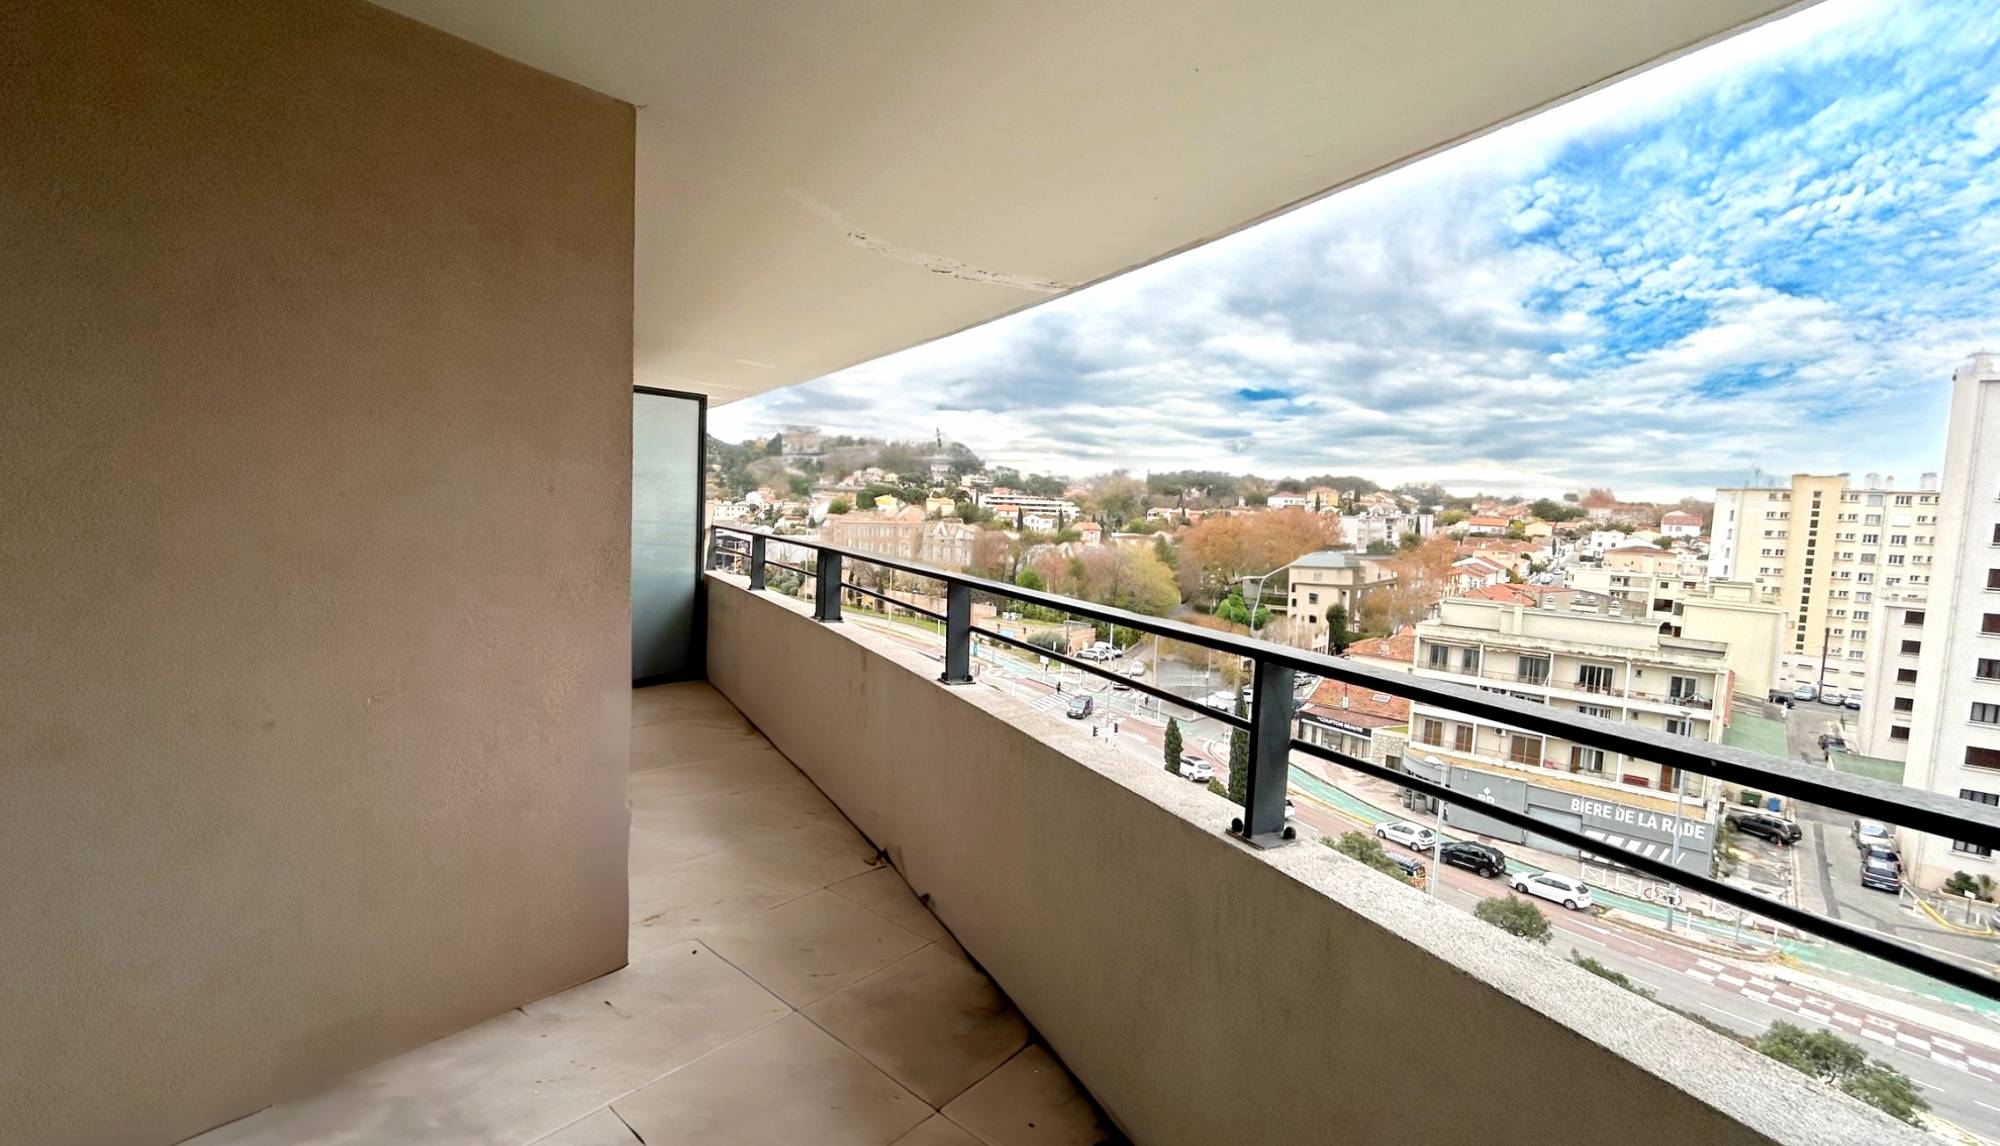 Appartement T2 avec terrasse à vendre dans résidence avec gardien à Toulon, Saint-Jean